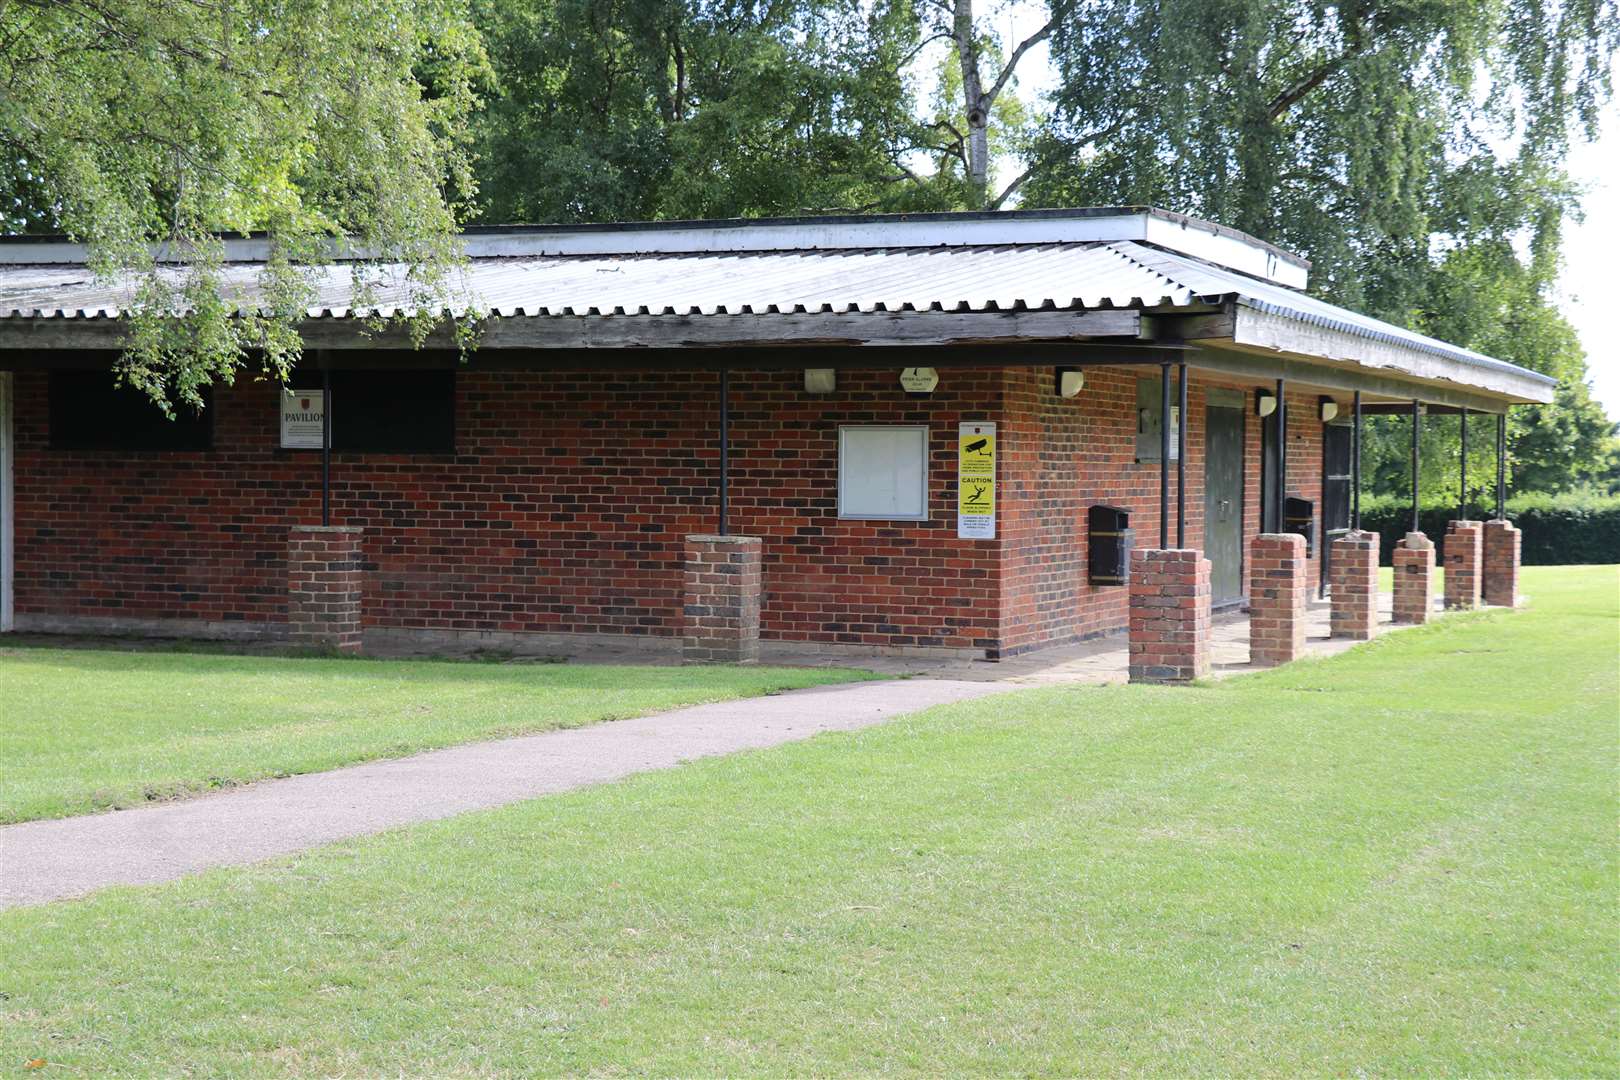 The pavilion at Tenterden recreation ground